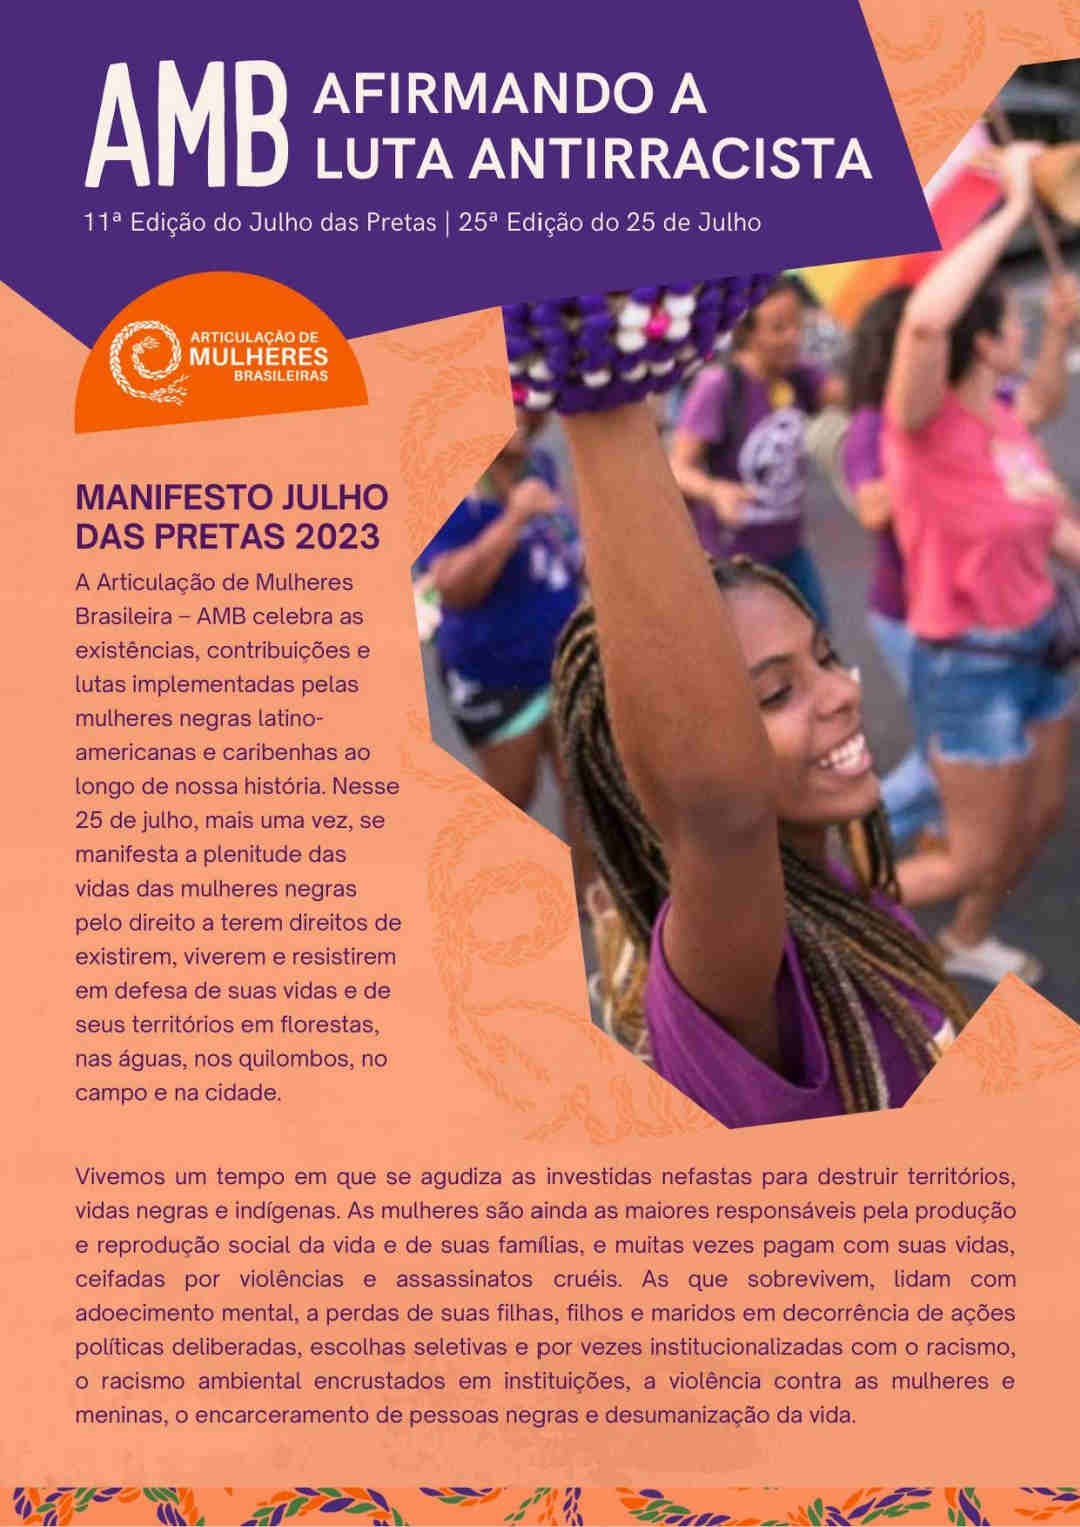 Manifesto Julho das Pretas 2023 - Articulação de Mulheres Brasileiras